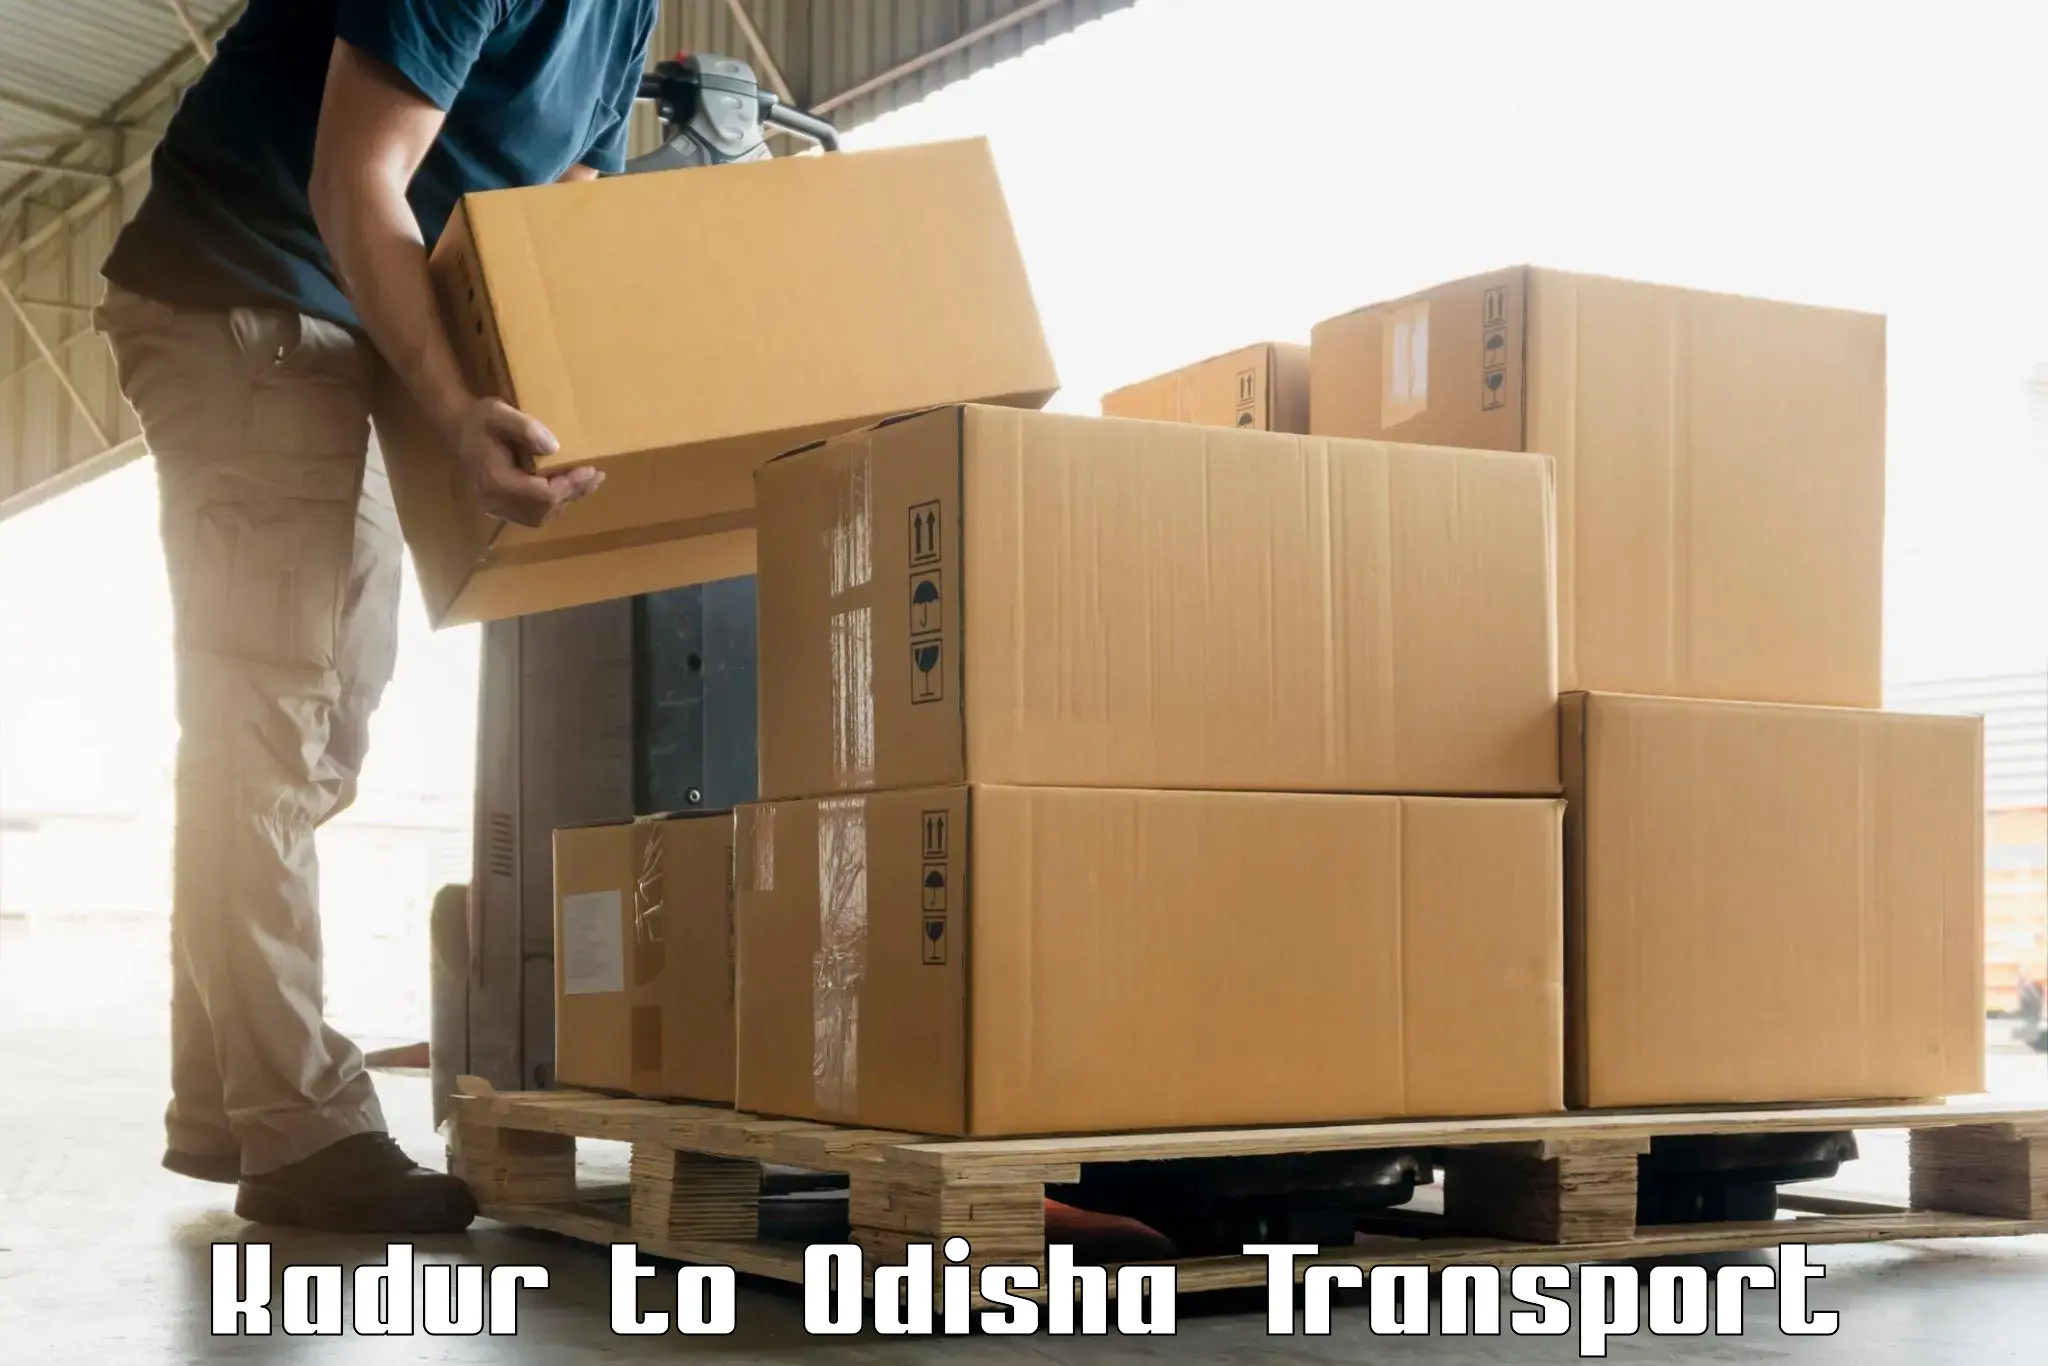 Container transport service Kadur to Betnoti